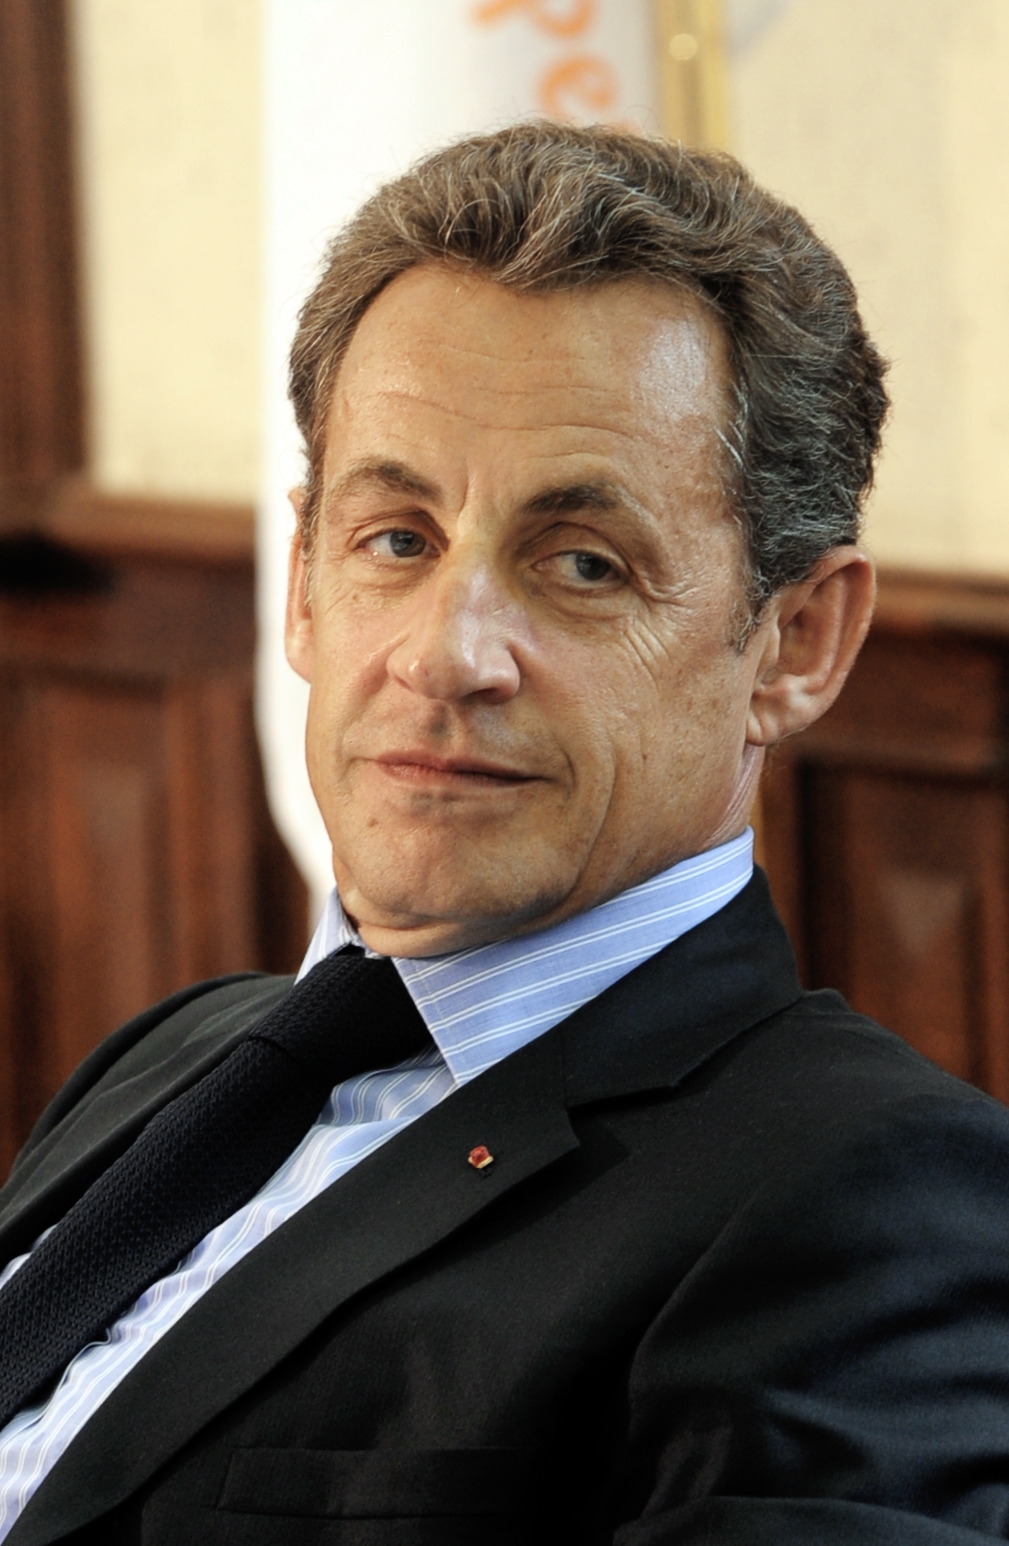 auteur Nicolas Sarkozy de la citation Le succès et la promotion sociale n'ont pas raison que n'importe qui peut réclamer après avoir fait la queue dans un [bureau du gouvernement]. C'est mieux: c'est un droit, un droit que l'on peut mériter à cause de sa transpiration.